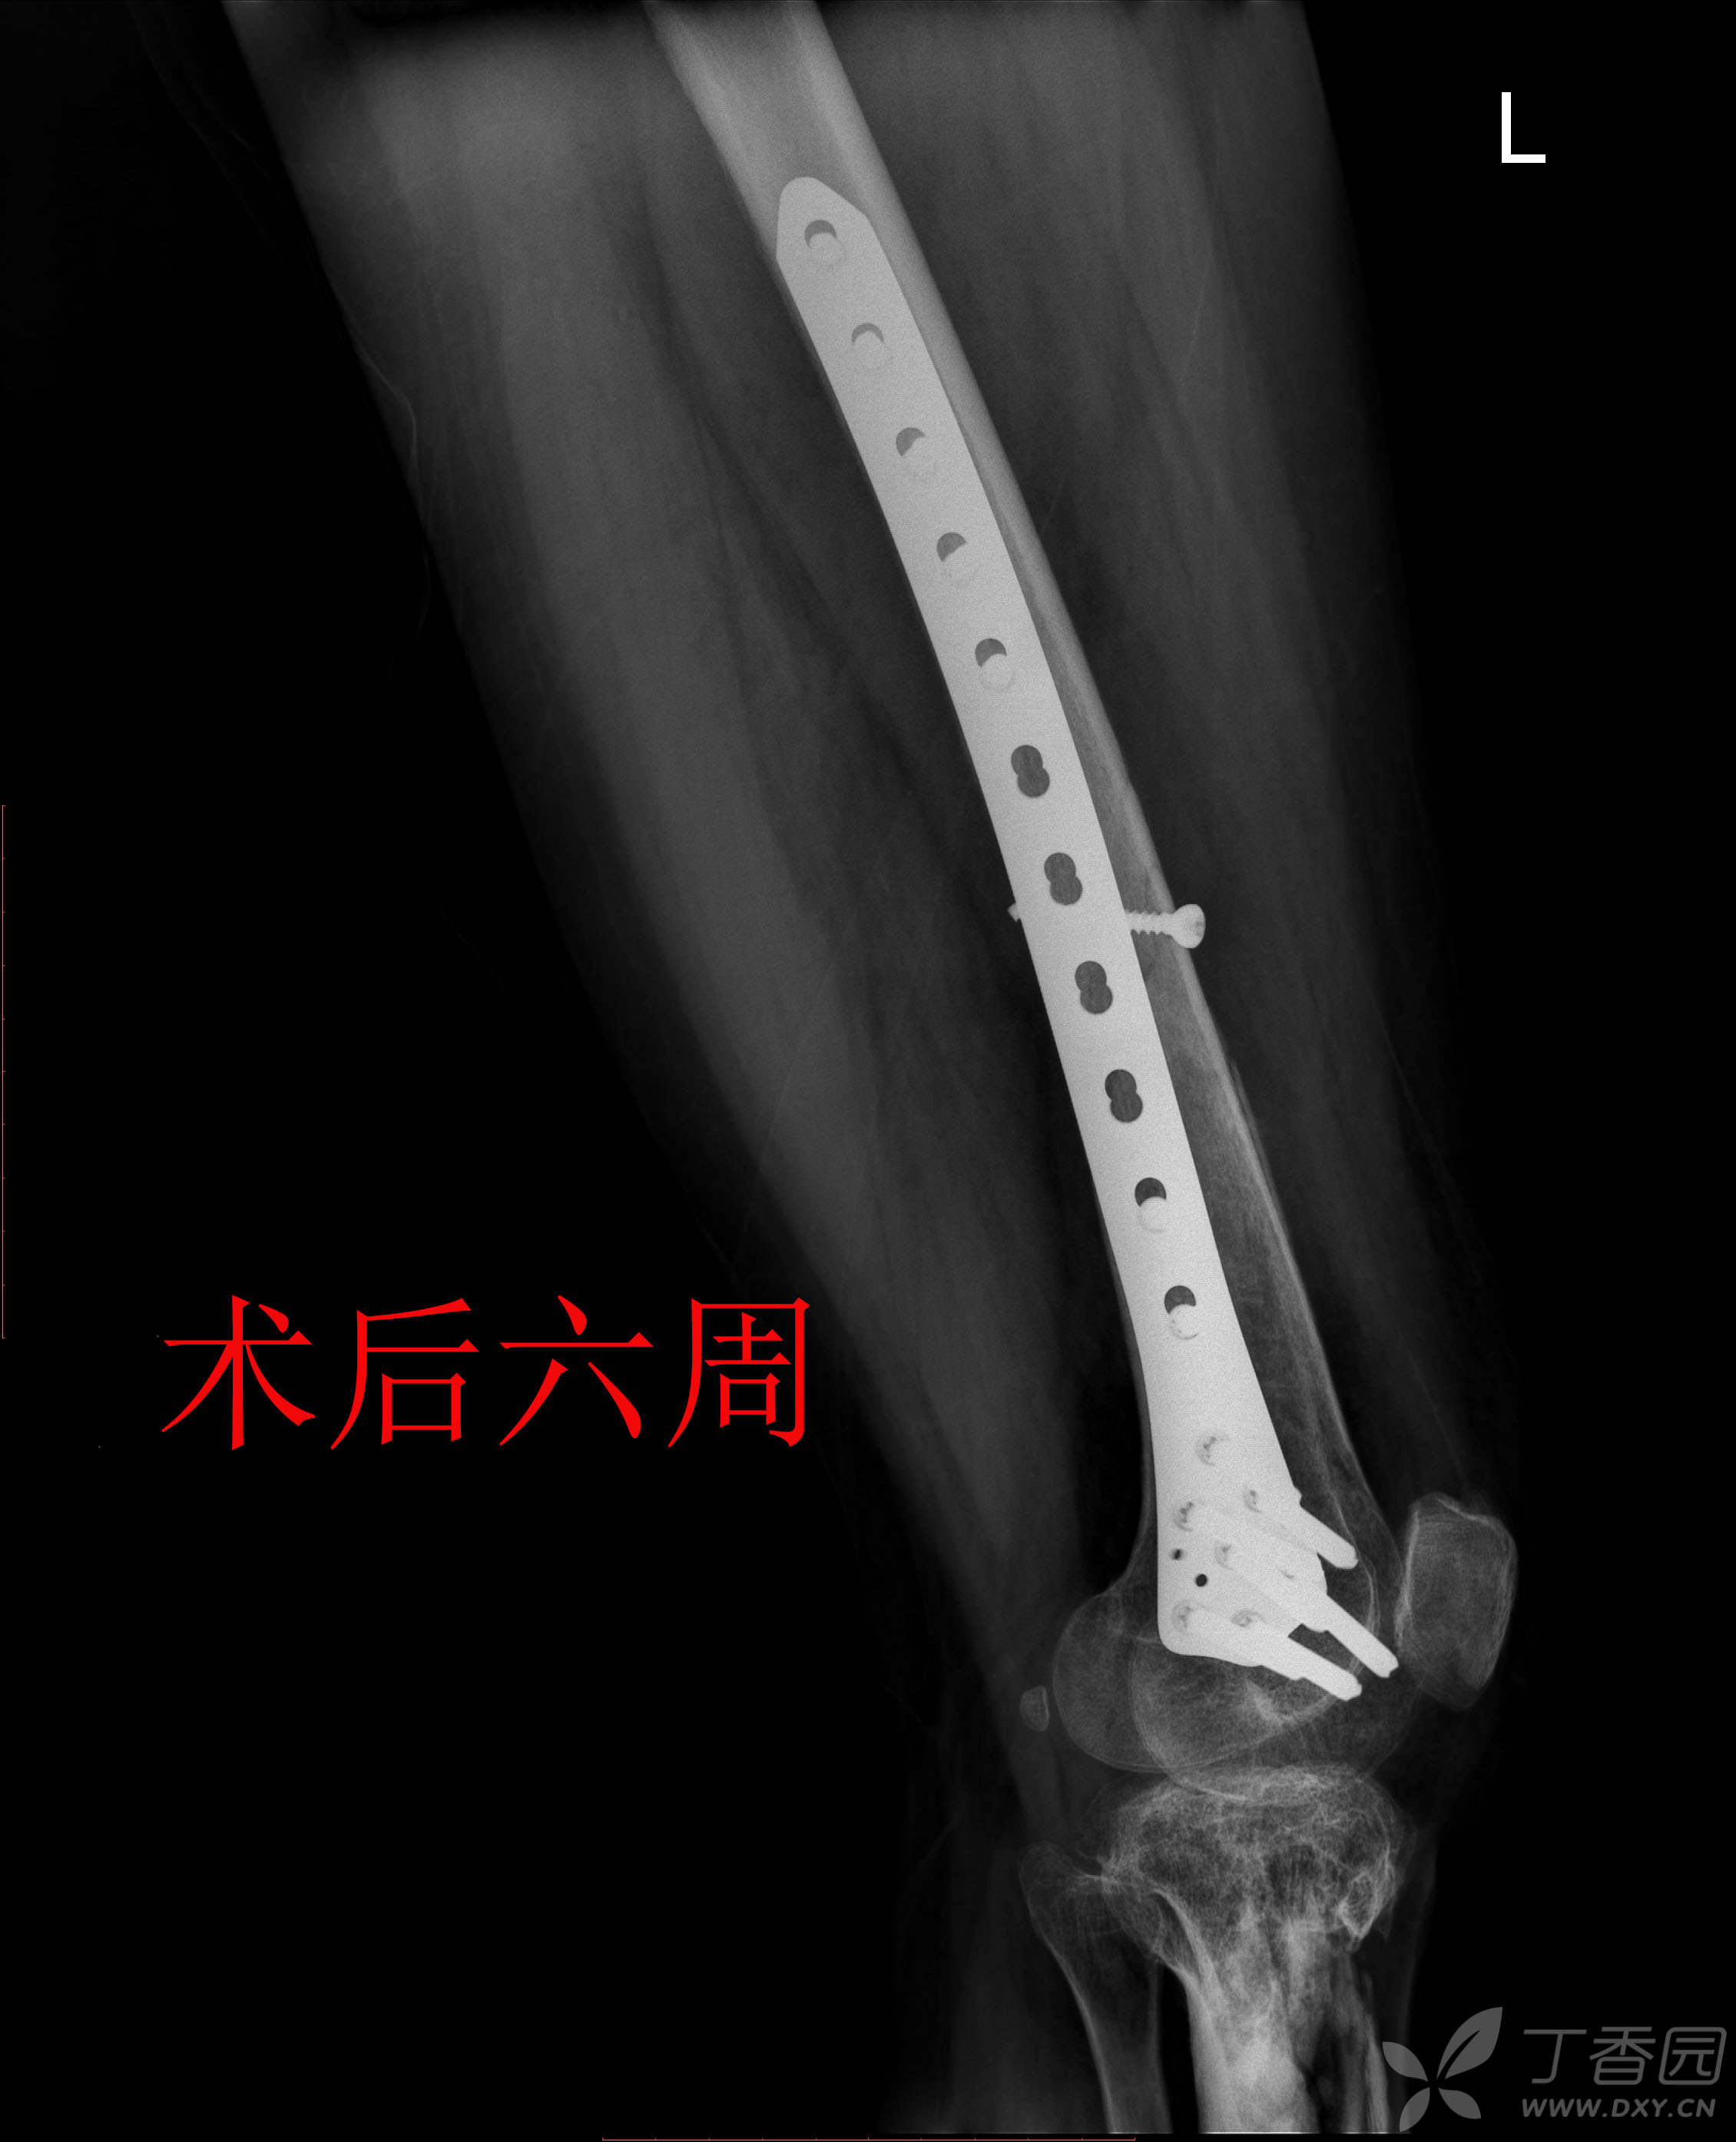 股骨远端骨折锁定钢板固定术后14月骨不连,影像资料清晰,连贯,请老师